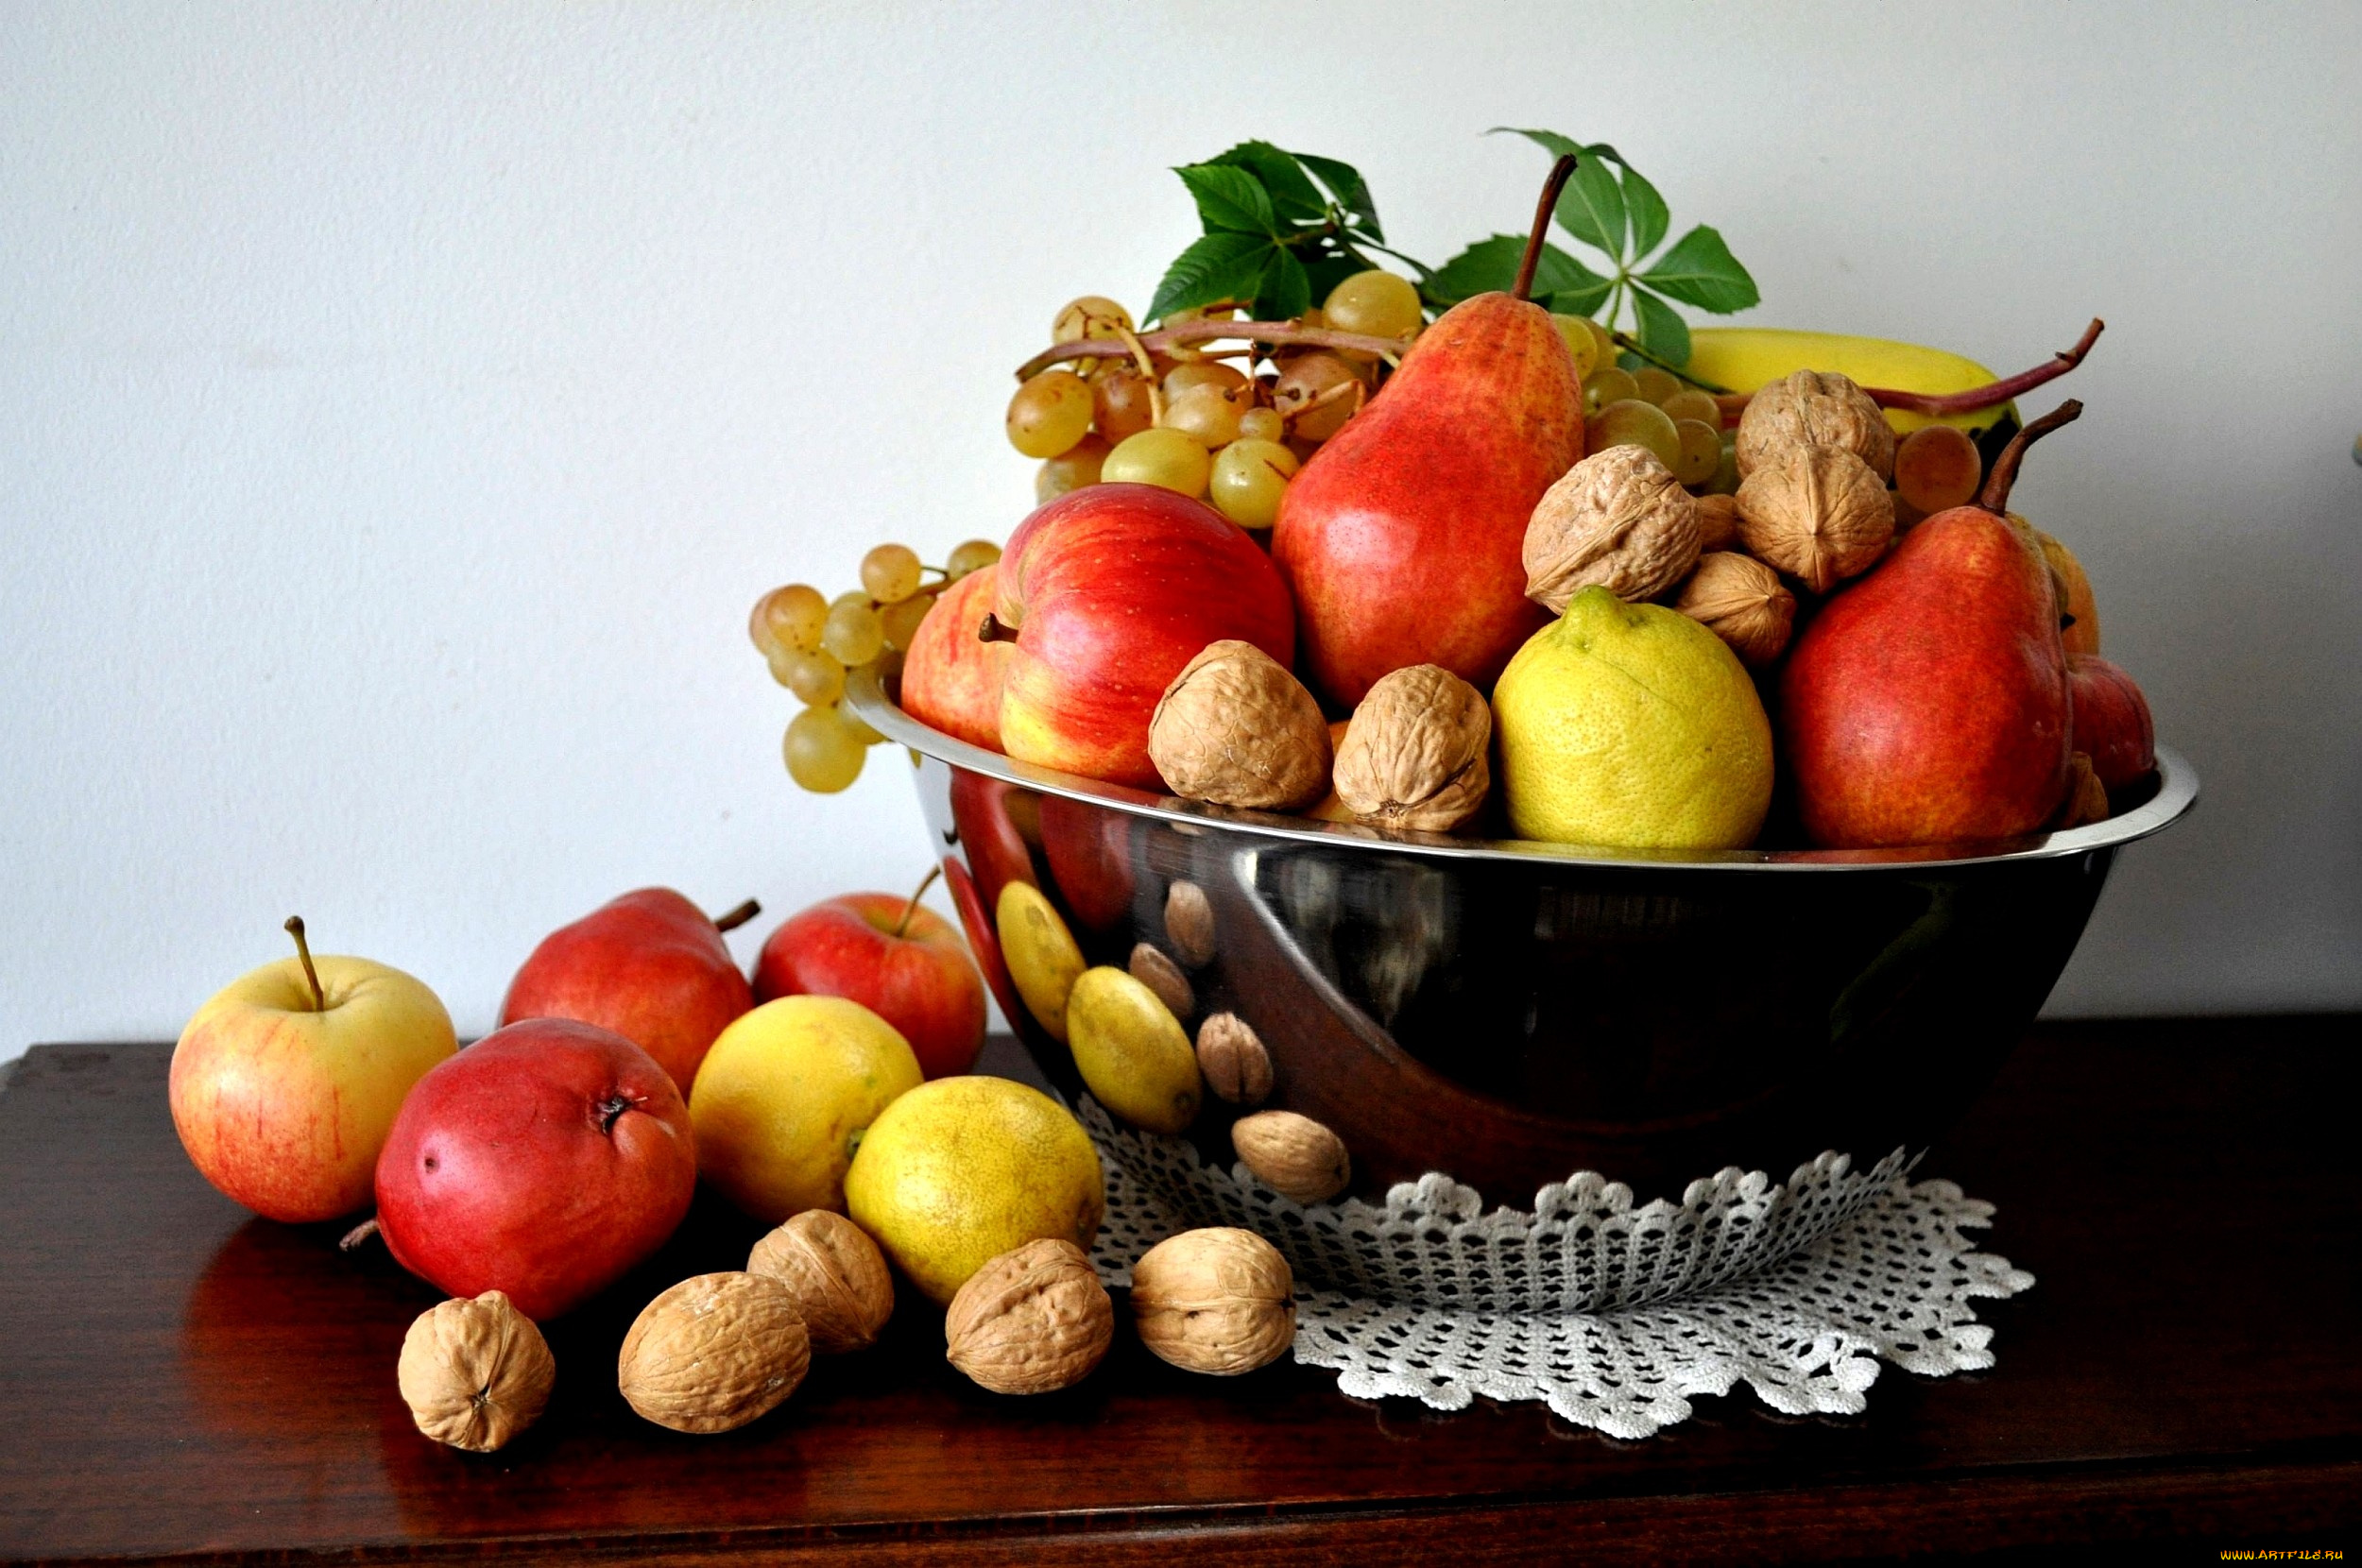 еда, фрукты, ягоды, груши, яблоки, орехи, лимоны, виноград